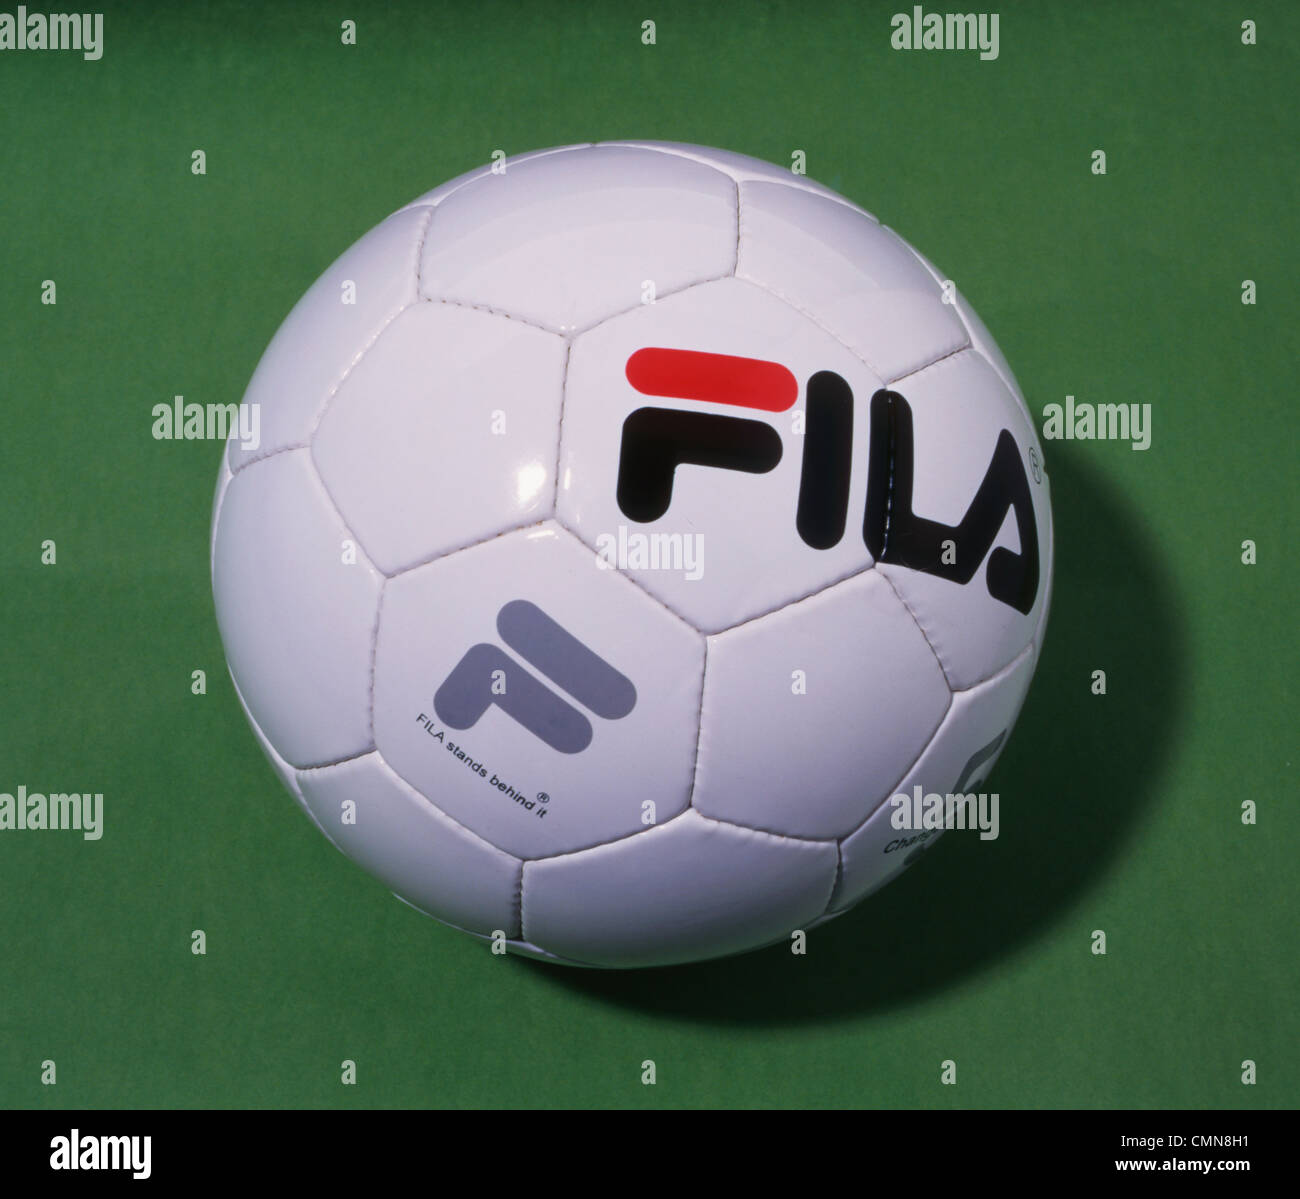 stitched Fila football Photo Alamy